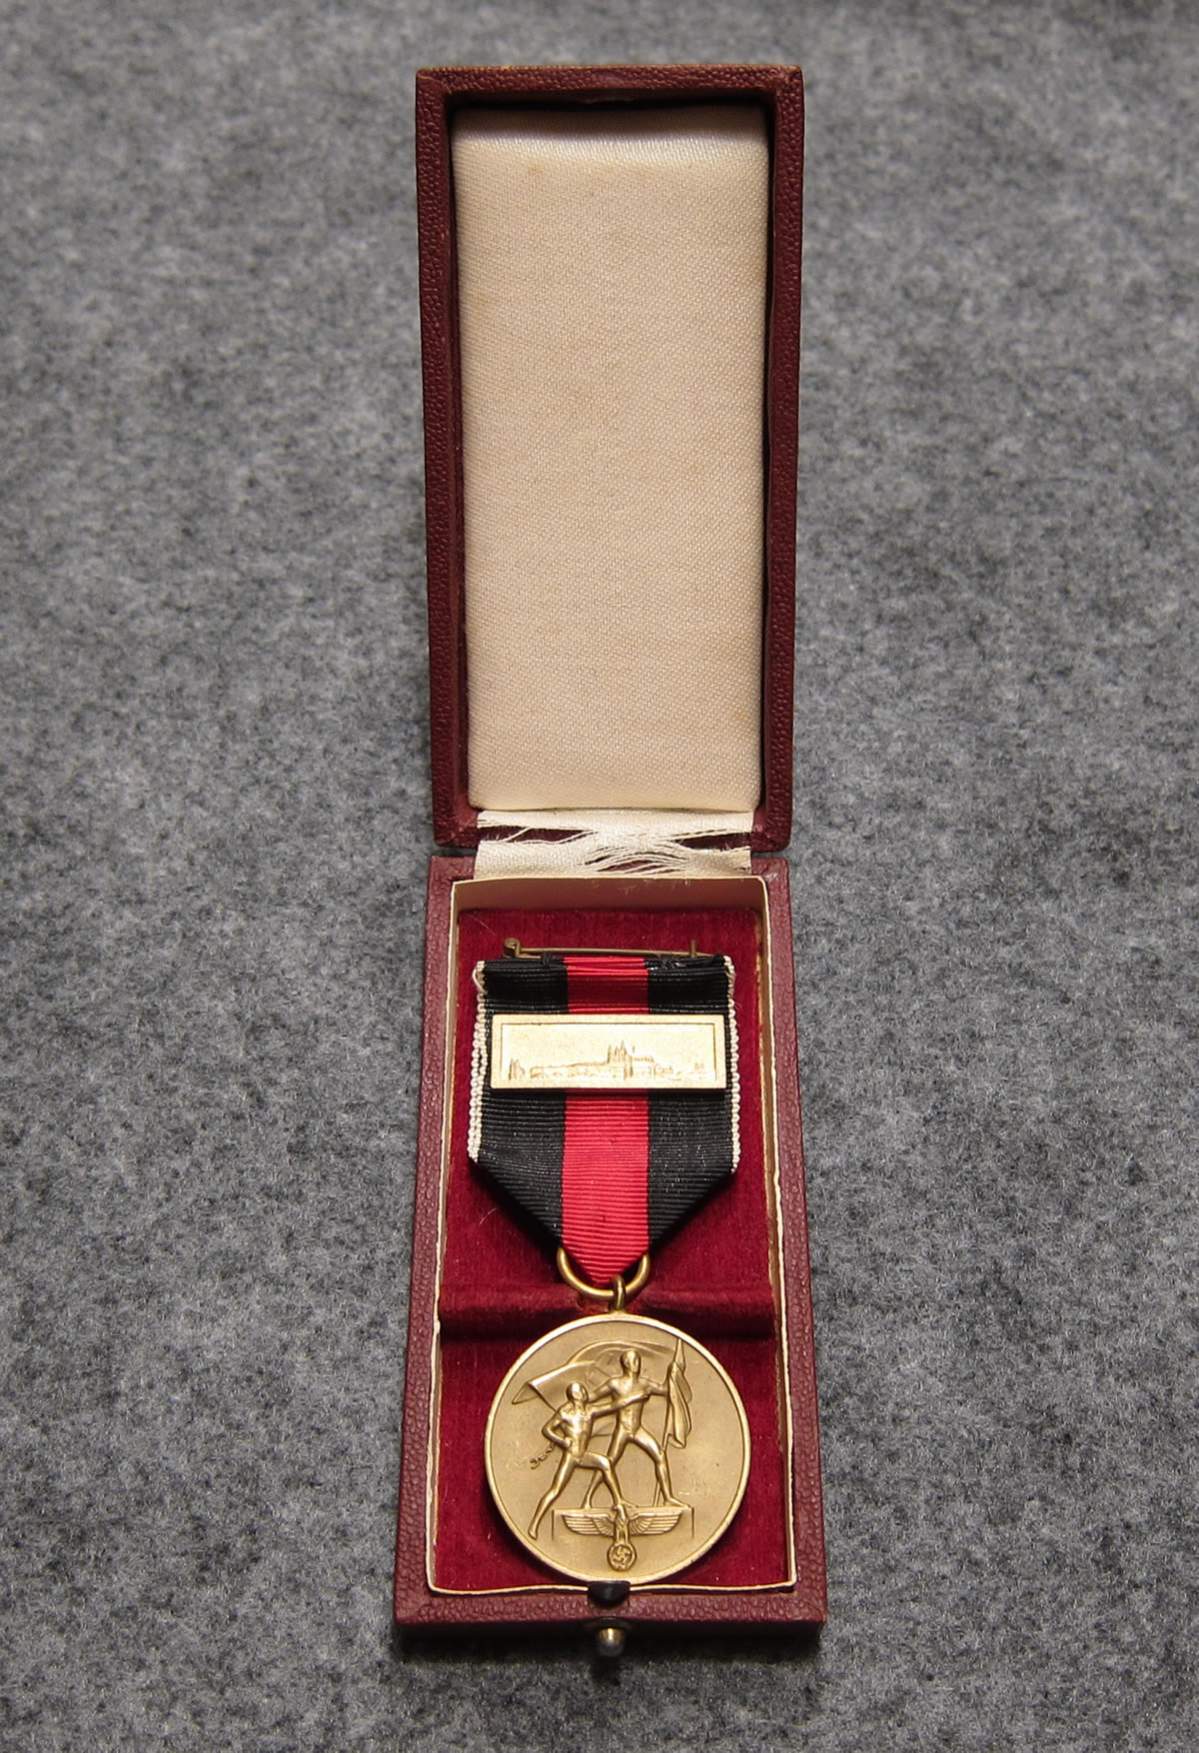 1st Oktober Sudetenland Medal with Prague Castle bar